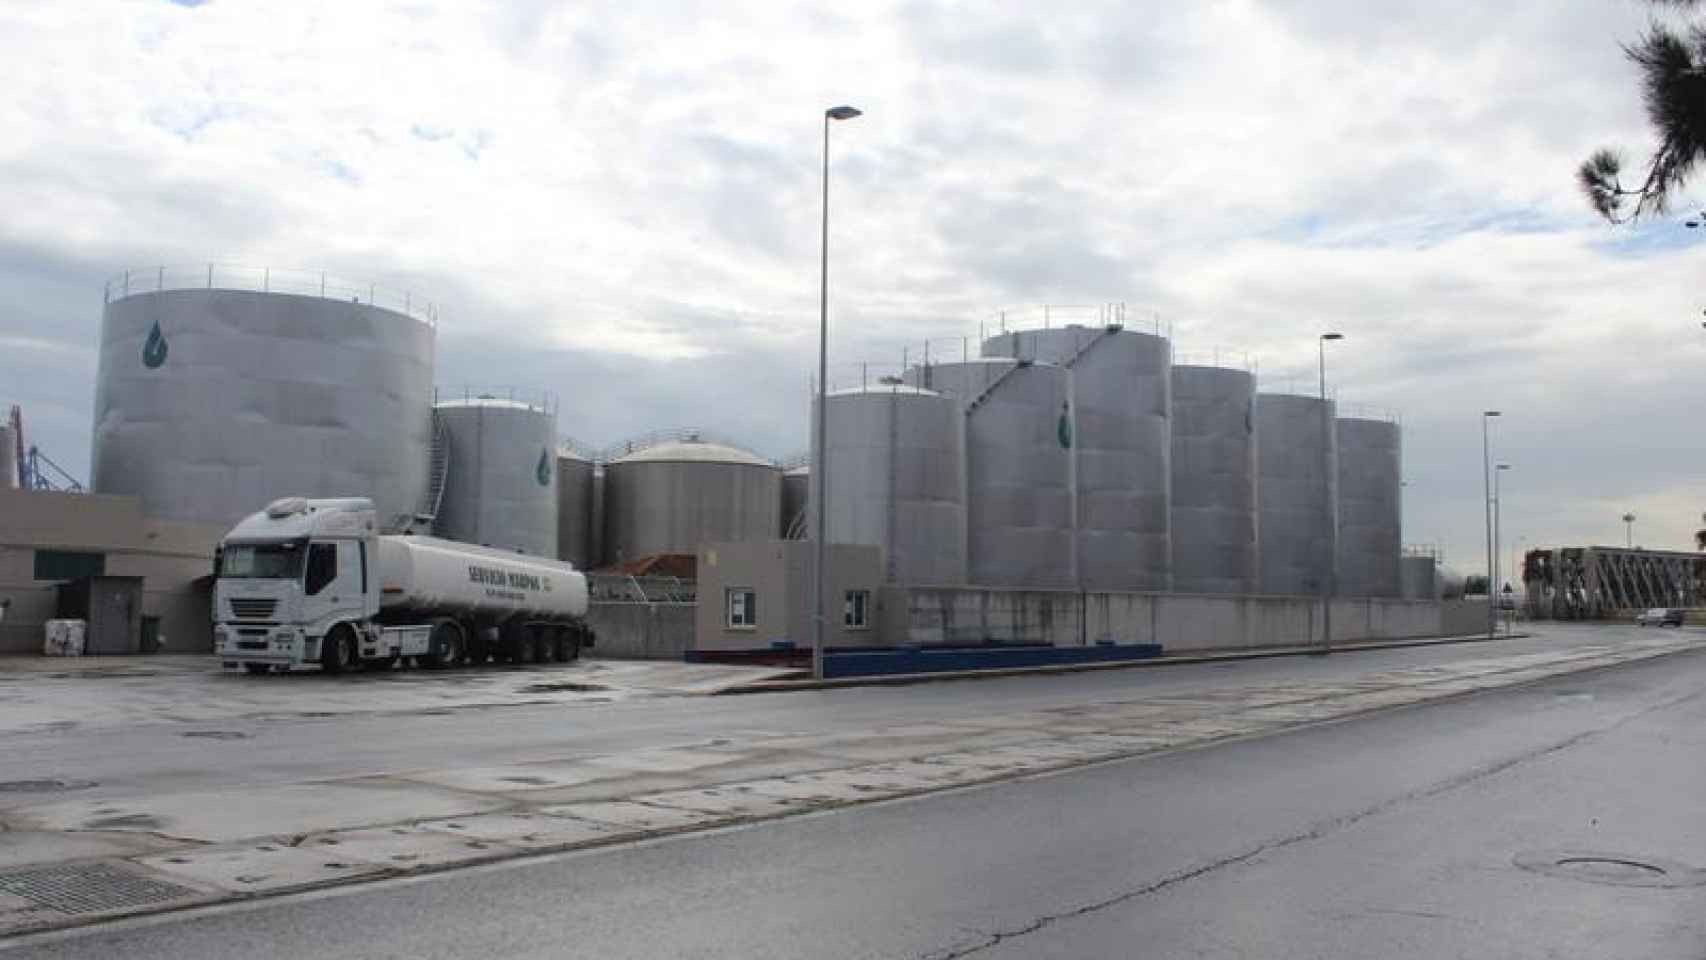 Instalaciones de Oil Distribution Terminals (ODT) en el puerto de Málaga / CG